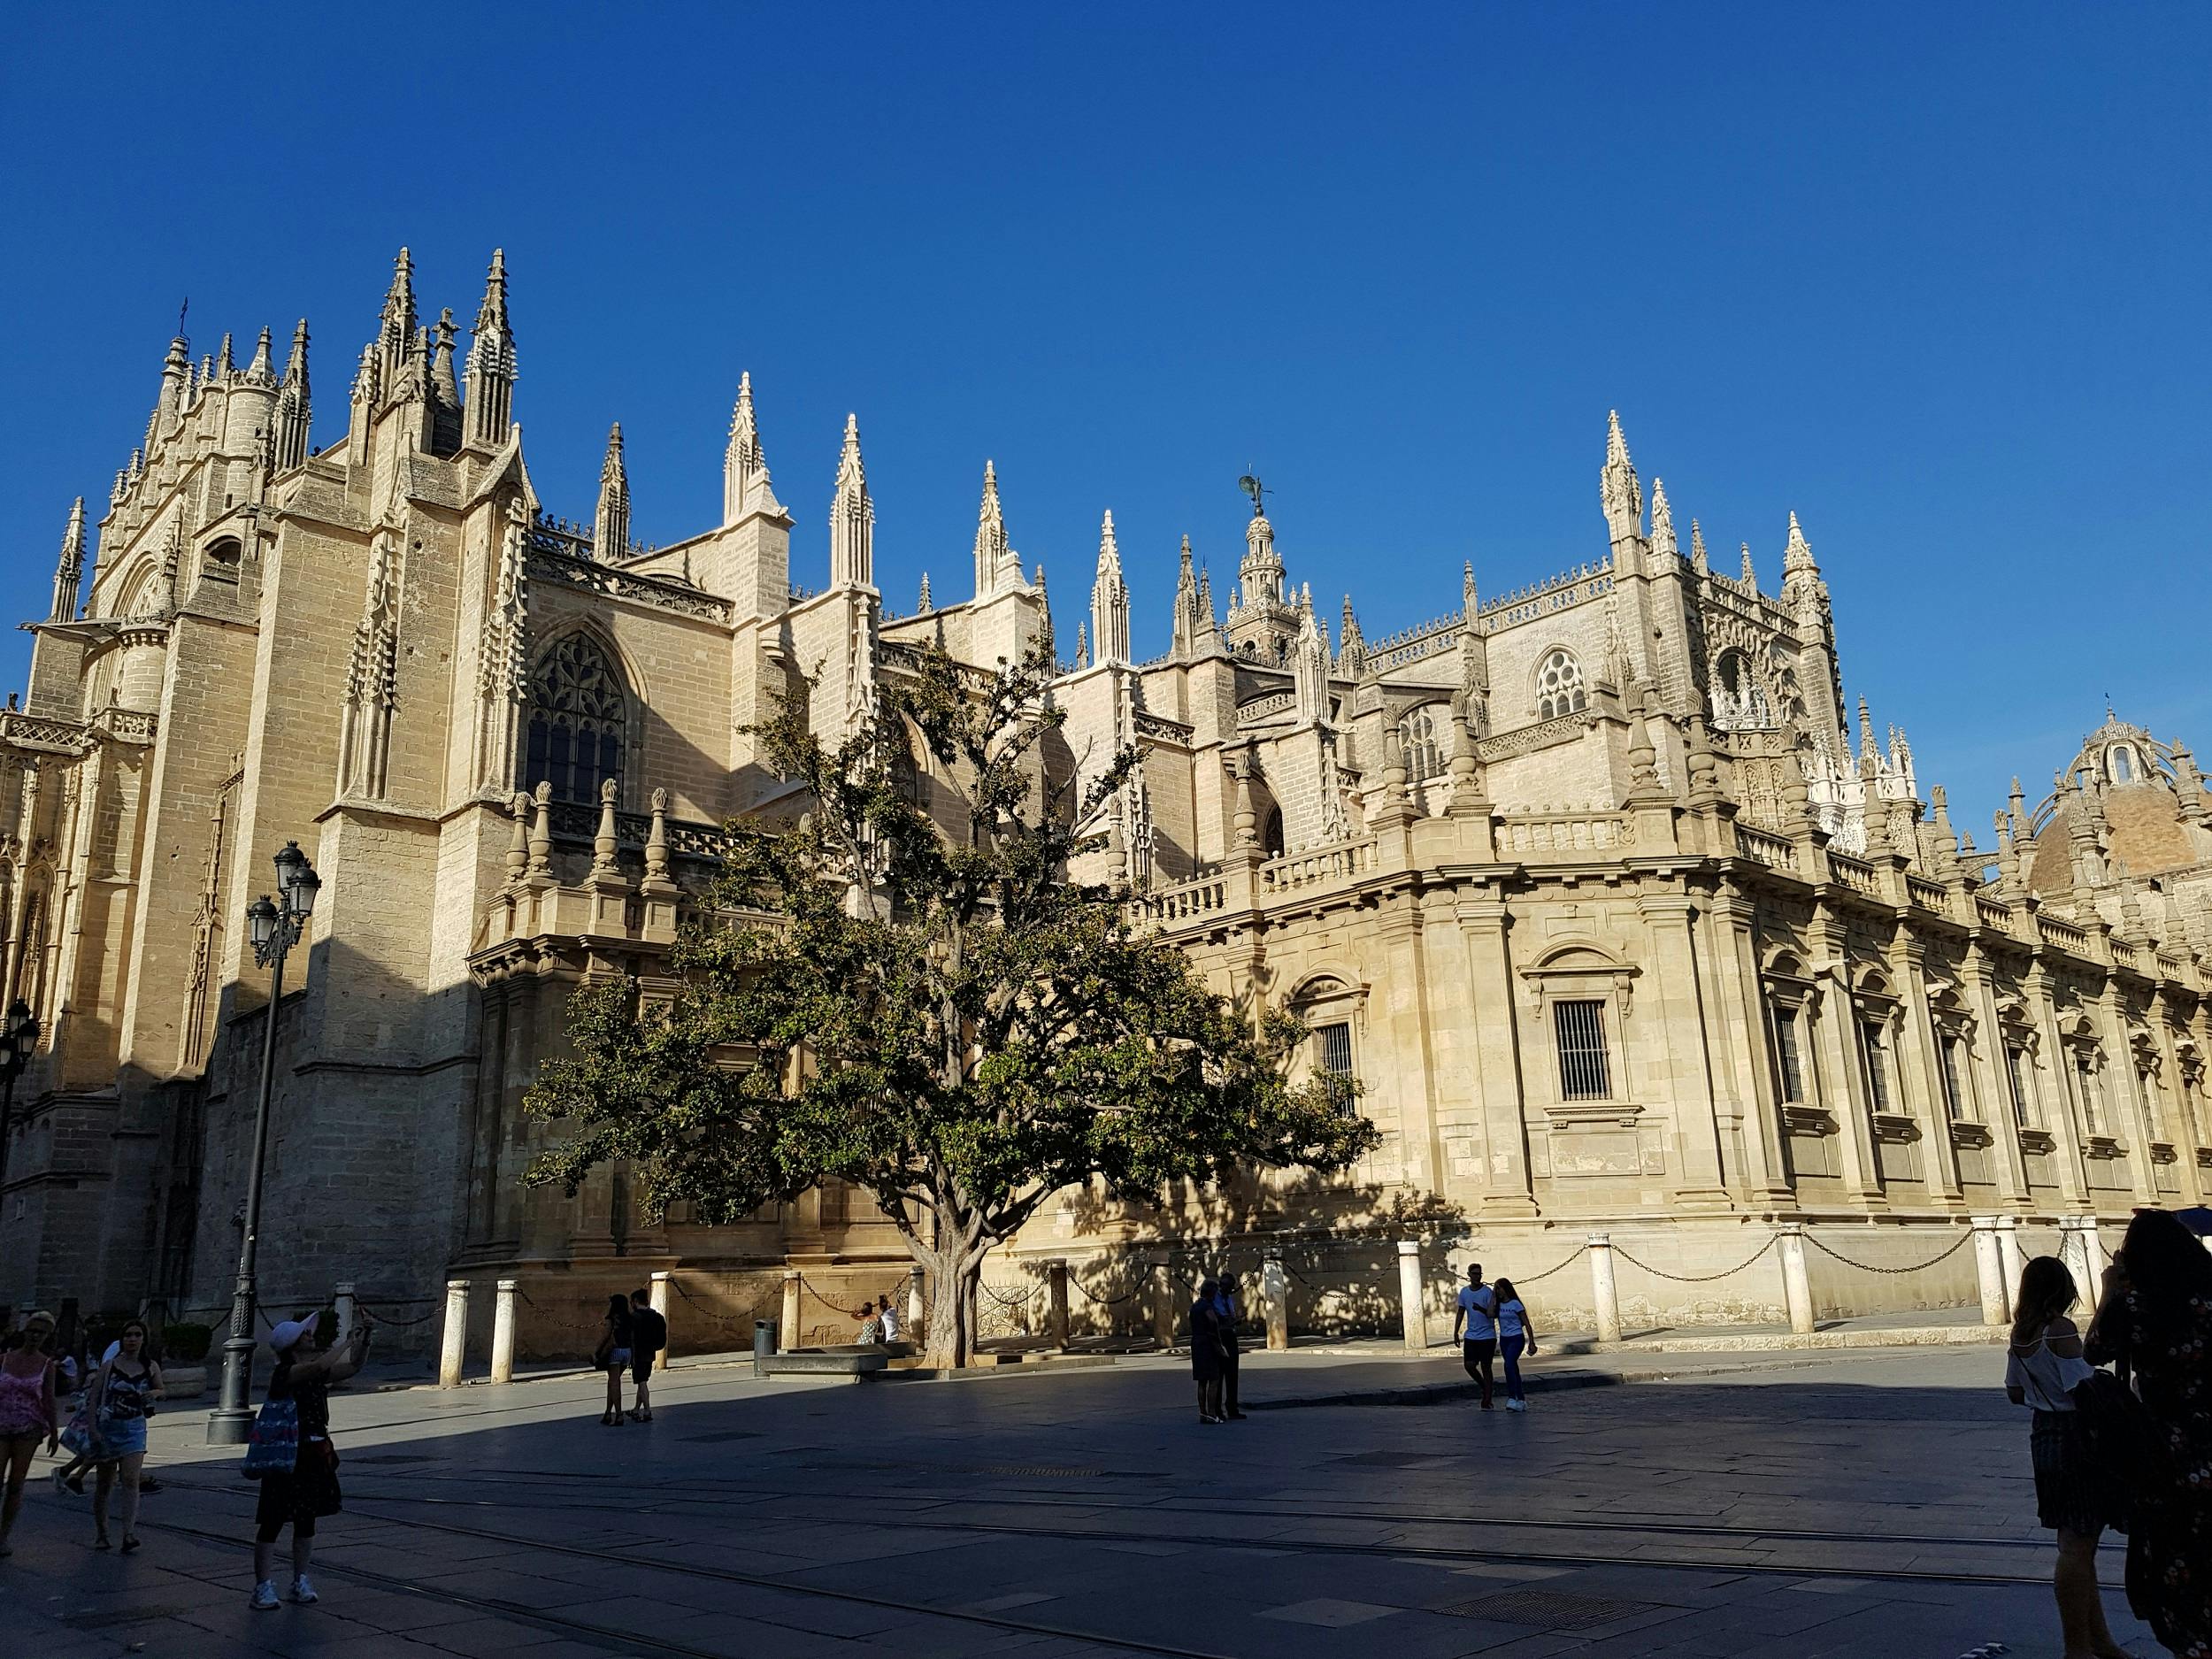 Alcázar de Sevilha e visita guiada à catedral com bilhetes de acesso prioritário